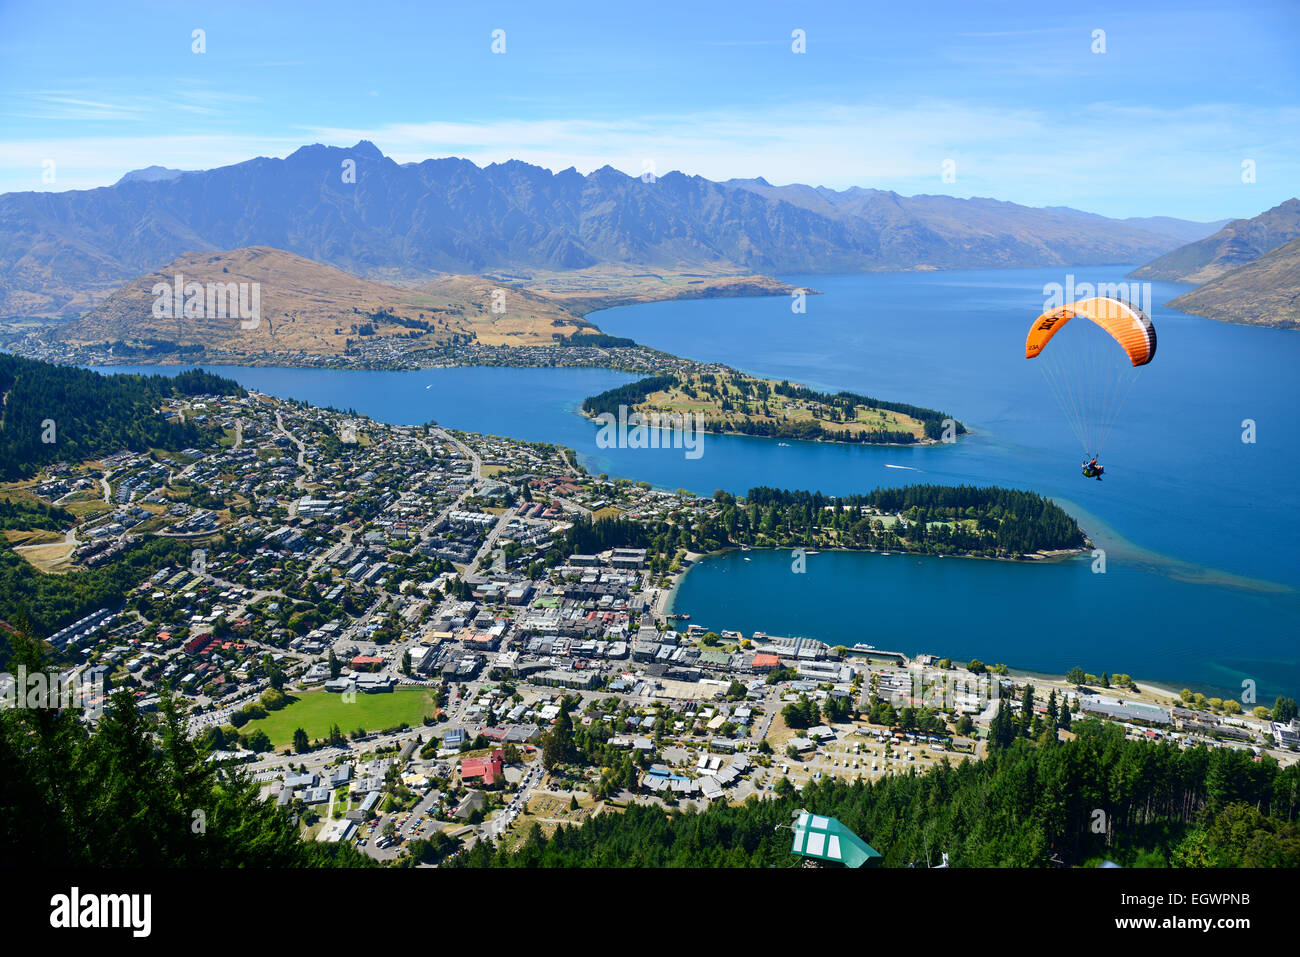 Blick auf Queenstown auf der Südinsel Neuseelands, genannt die Abenteuer-Hauptstadt der Welt. Stockfoto